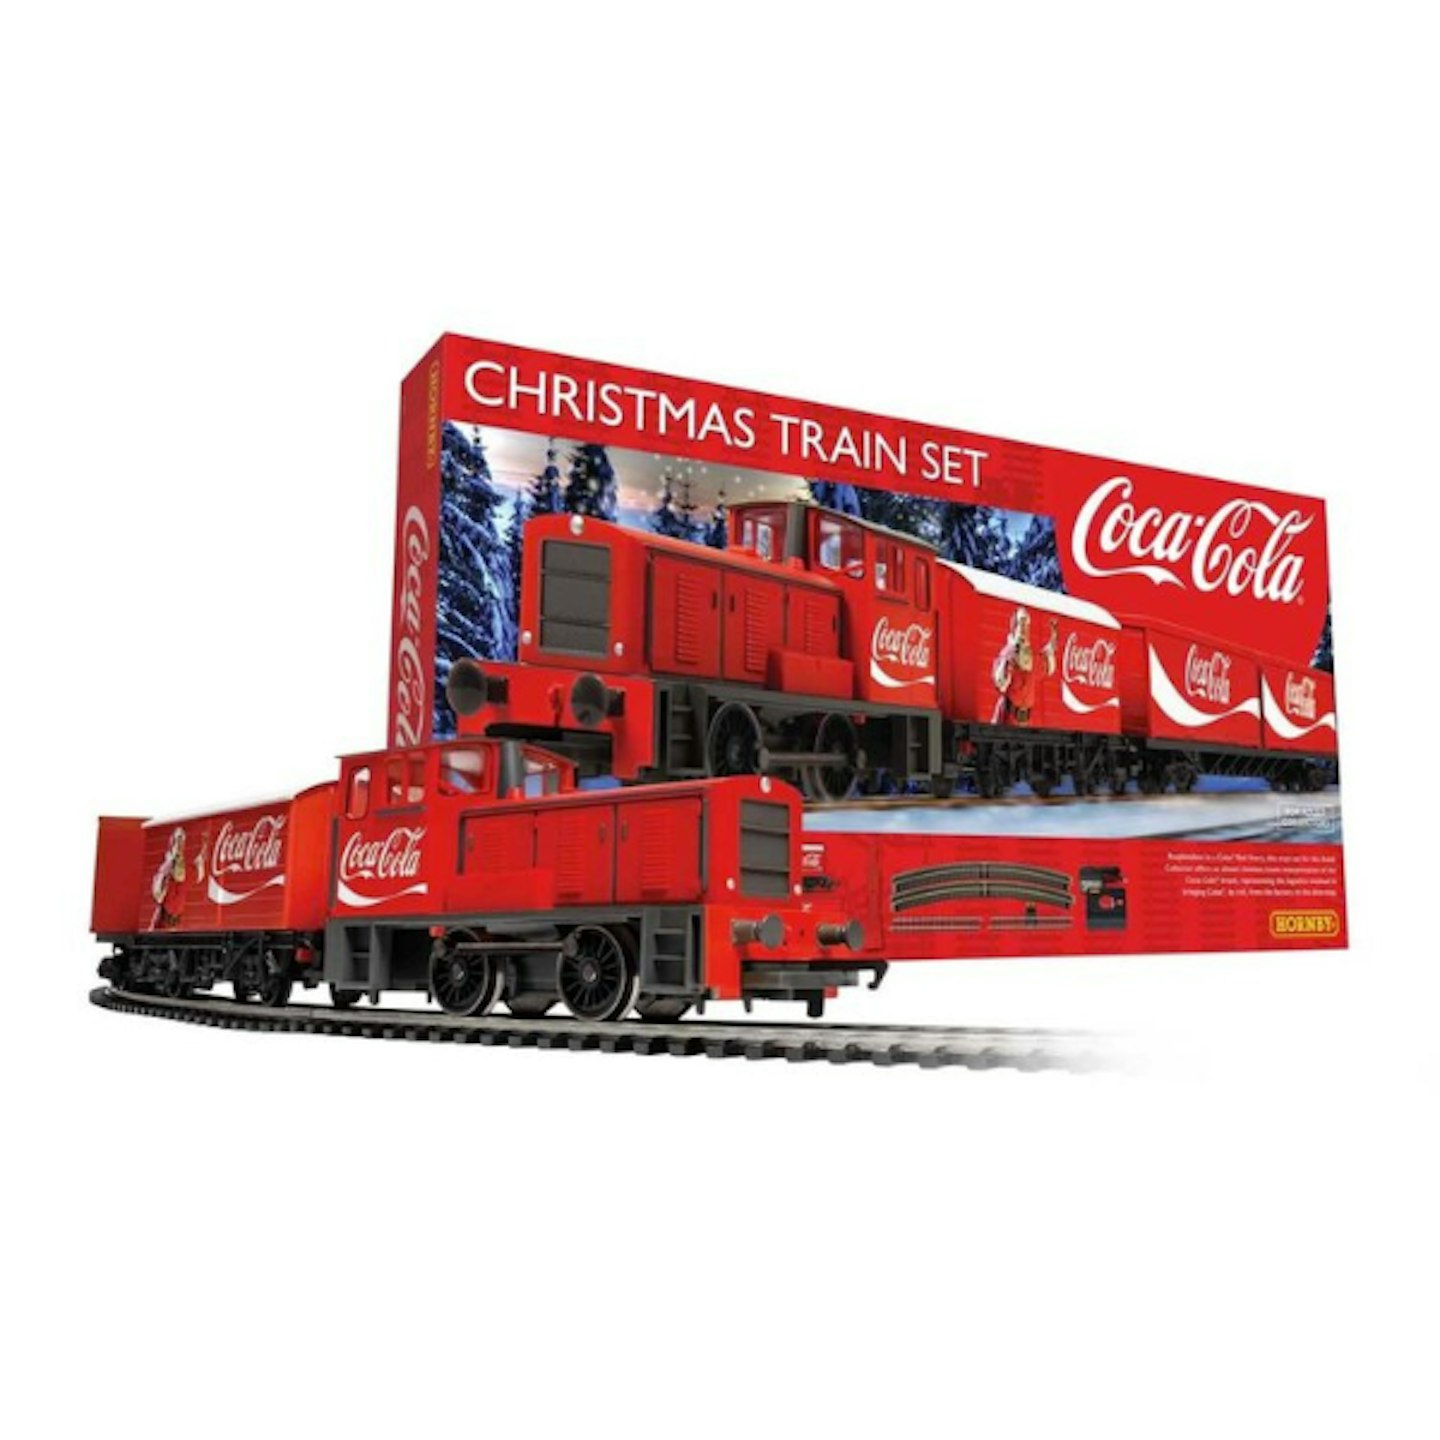 Hornby Coca-Cola Christmas Train Set, u00a379.99, hornby.com